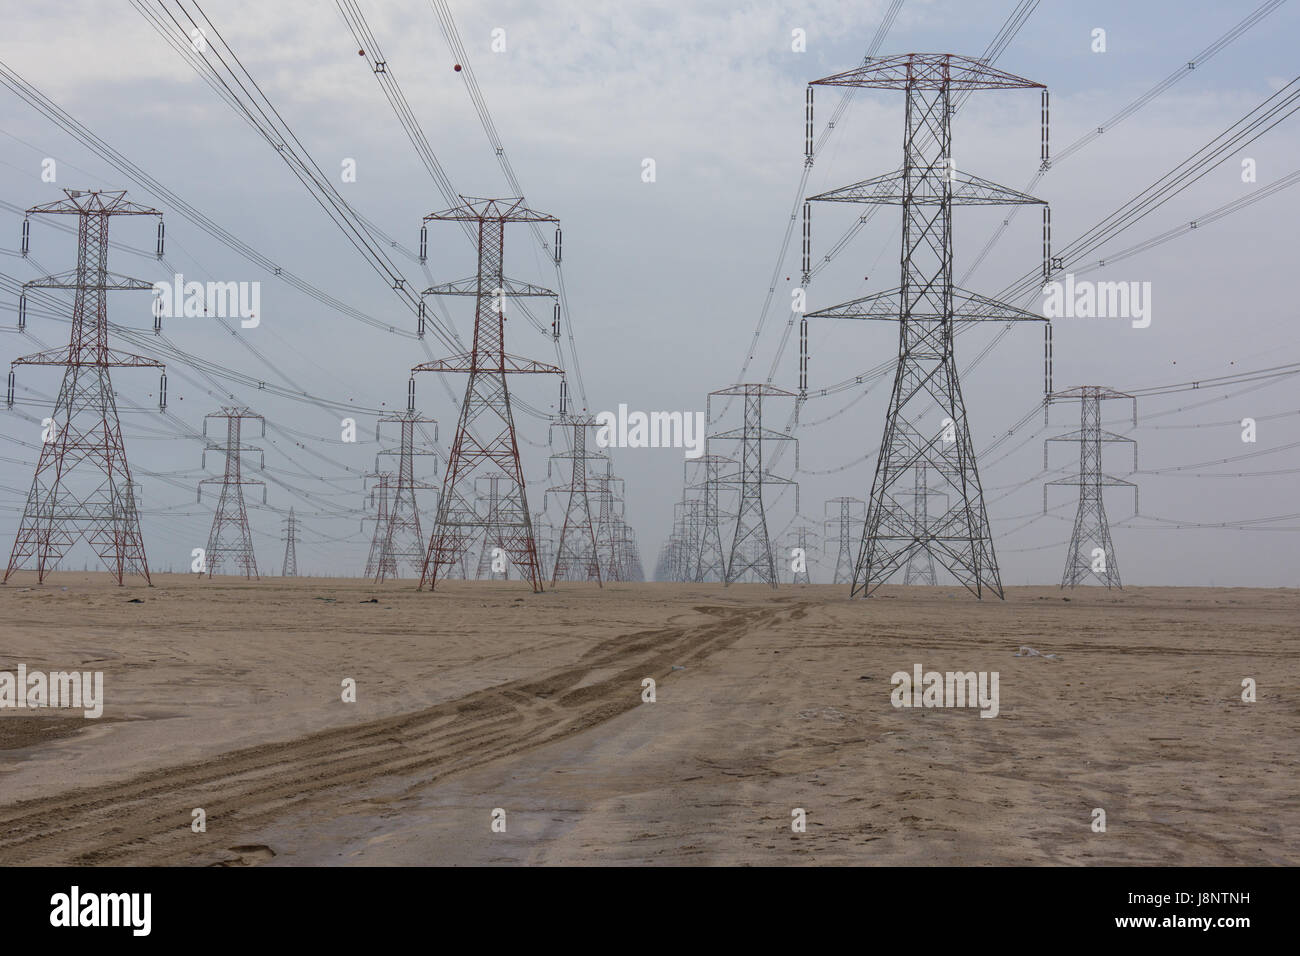 Les grandes lignes d'alimentation à travers le désert, fournissant la forte demande d'électricité dans la ville de Koweït. Banque D'Images